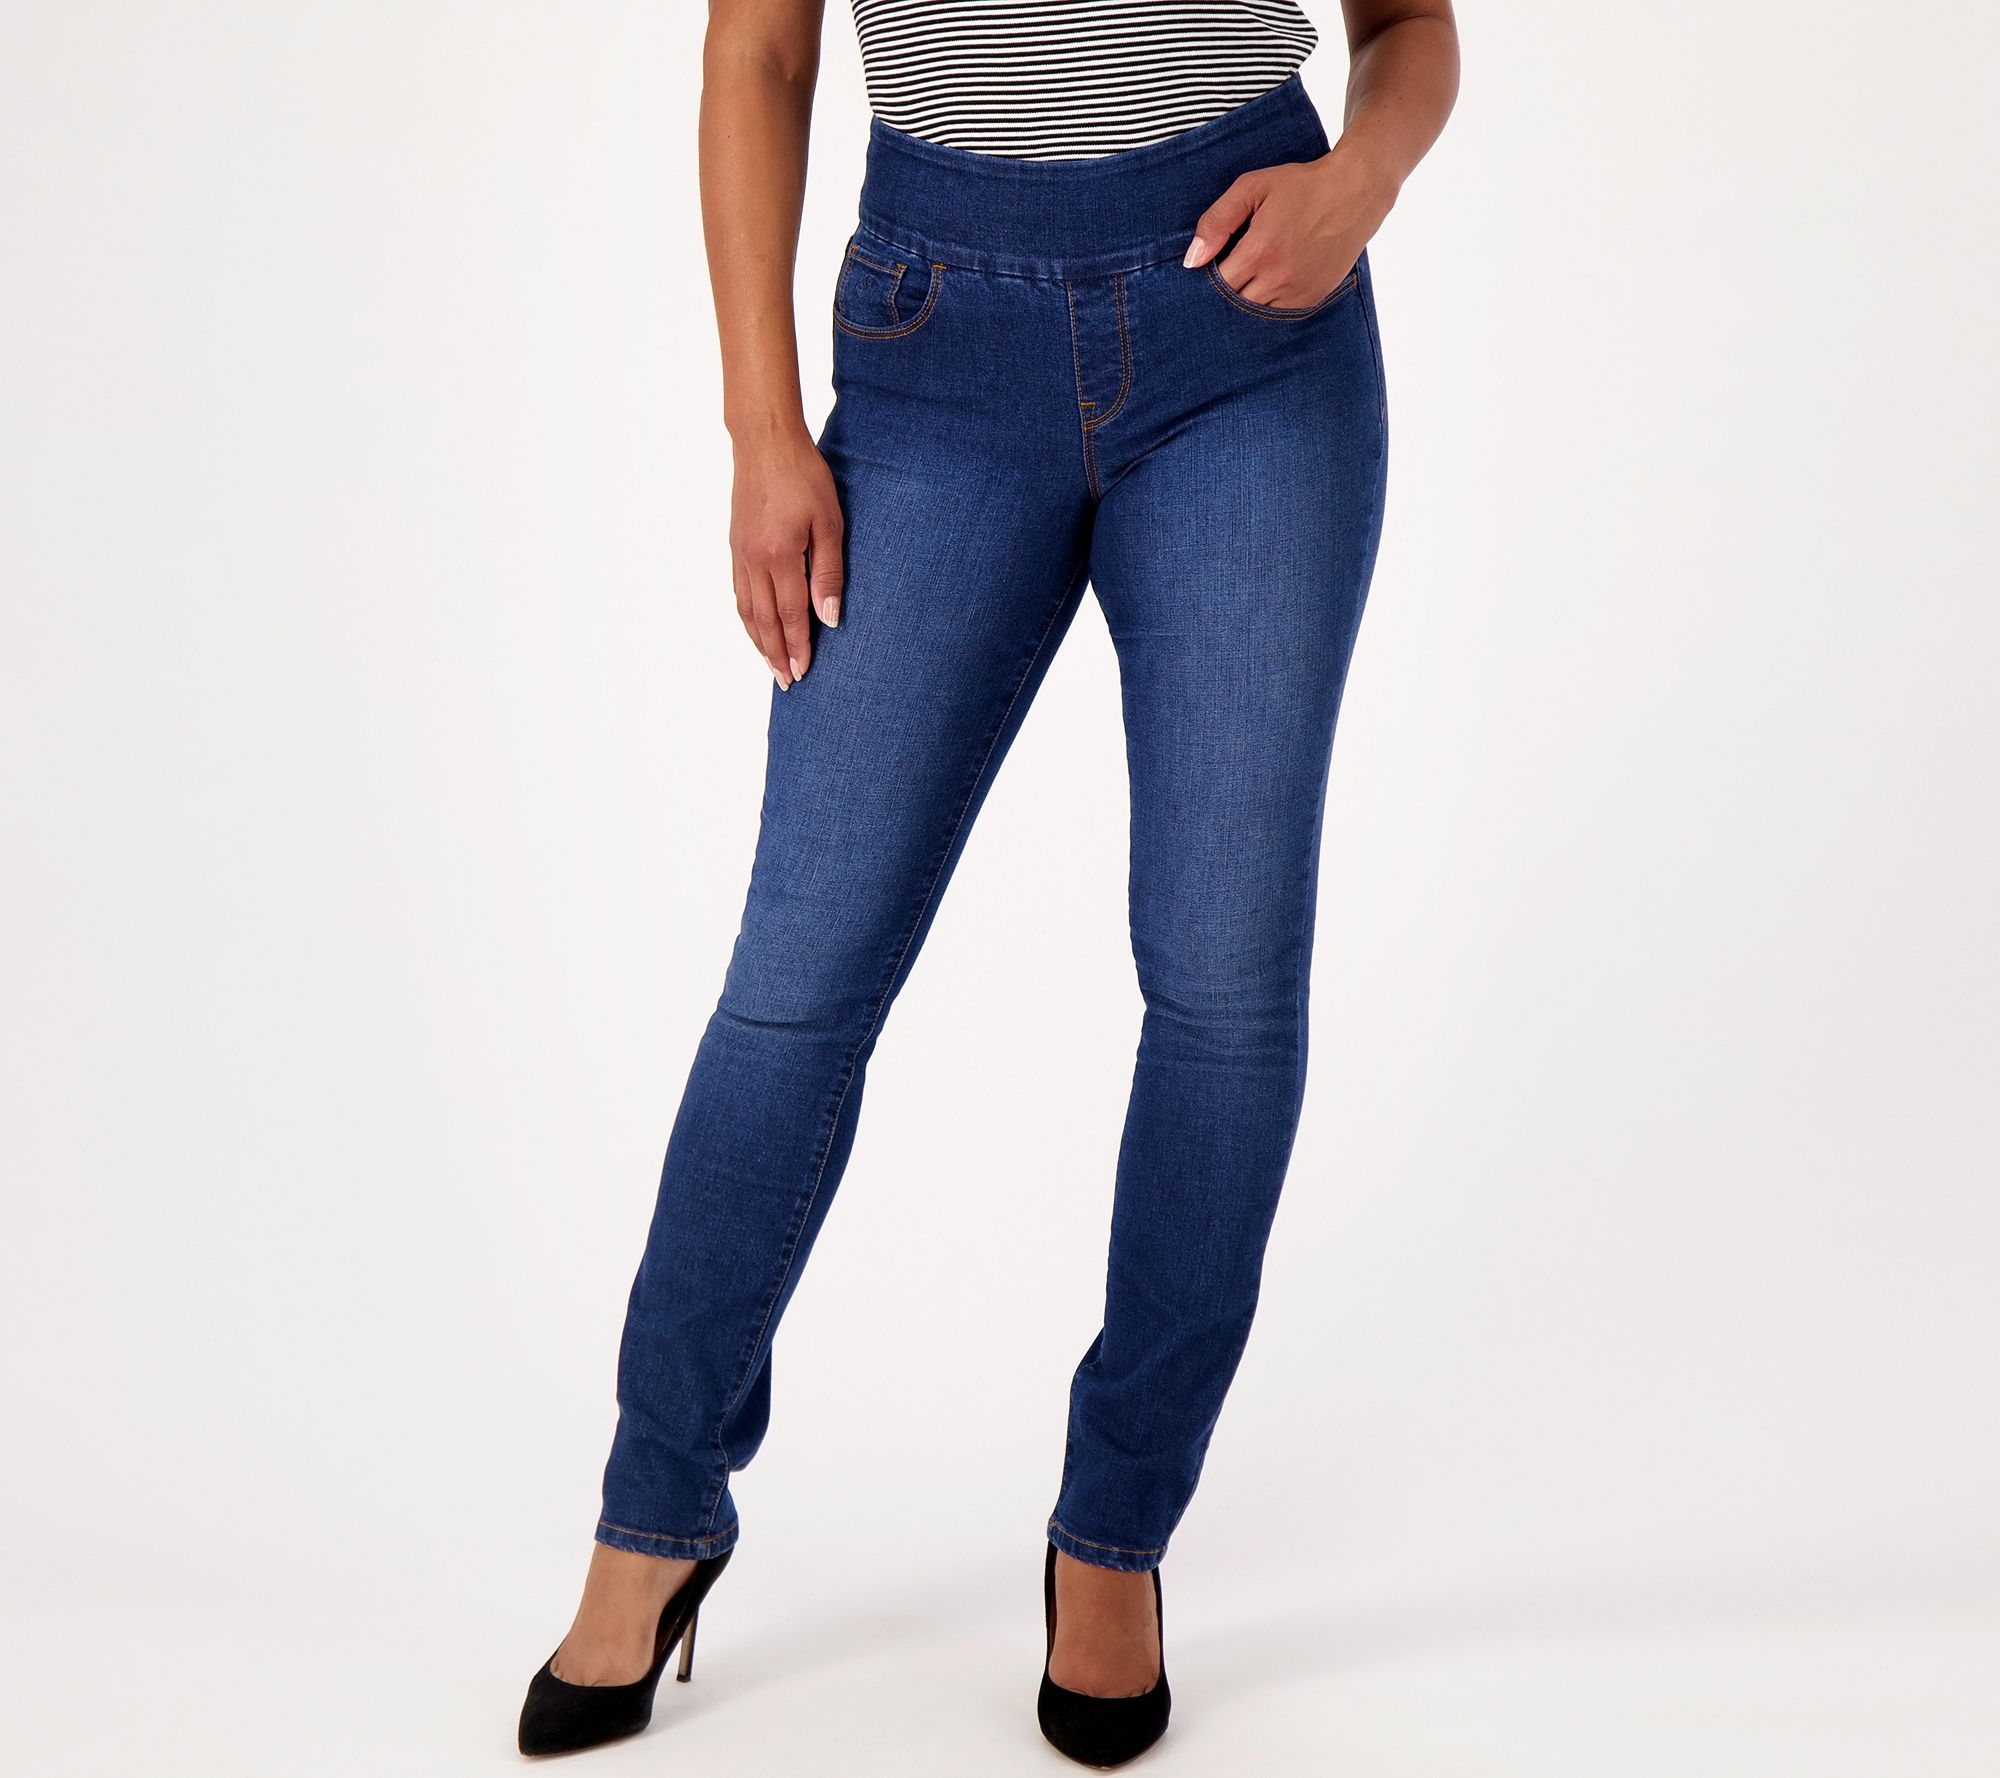 Gloria Vanderbilt Amanda Pull-On Jeans- Black Rinse